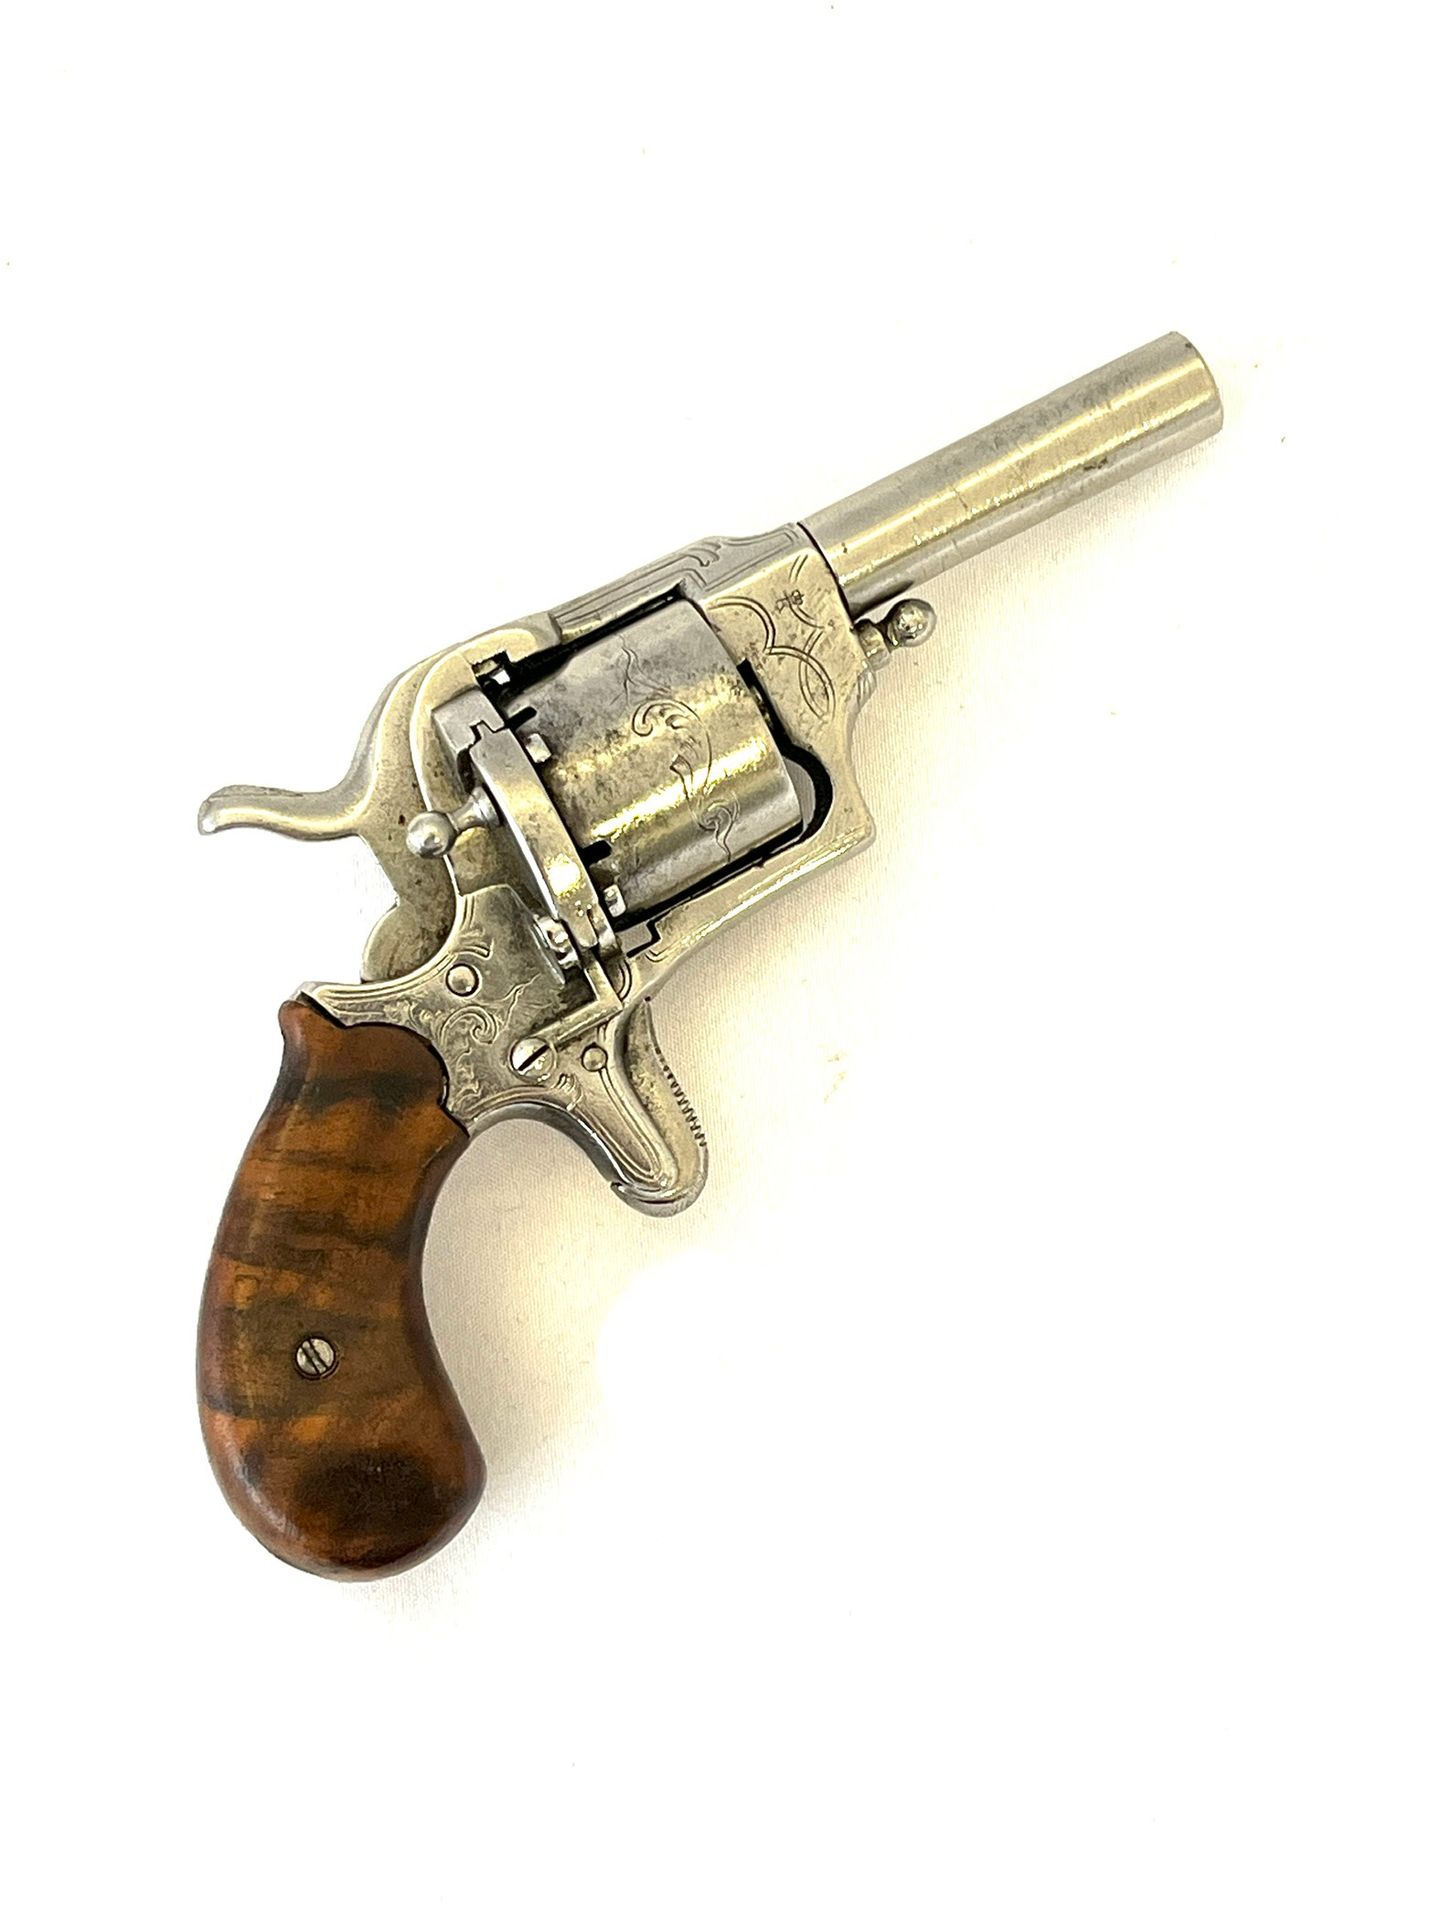 Null Revolver à broche

modèle de poche

calibre 7 mm, canon rond de 65 mm, bari&hellip;